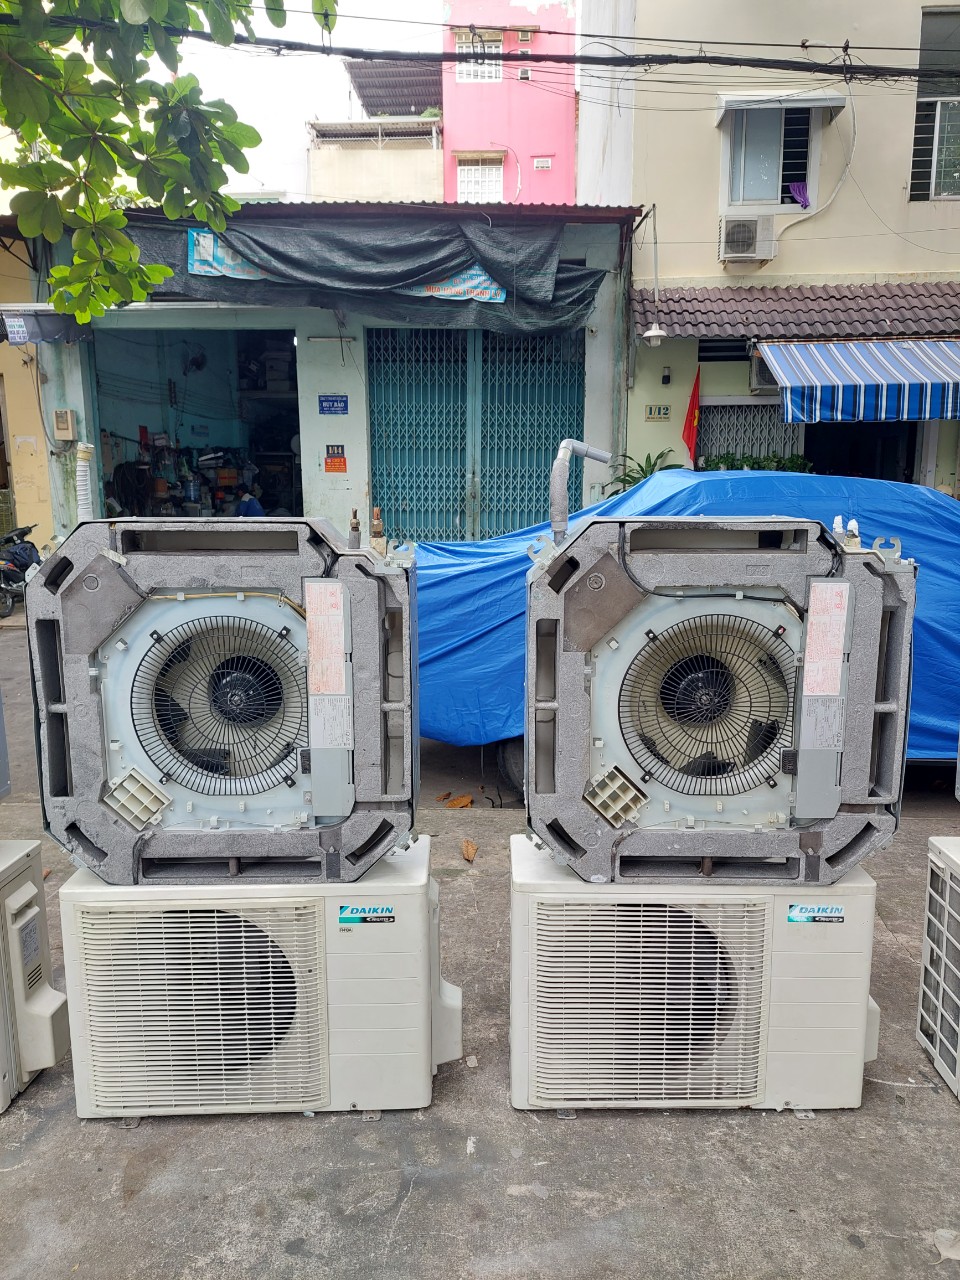 Quy trình thu mua máy lạnh cũ tại Thu mua máy lạnh cũ âm trần Bình Phước nhanh gọn, chuyên nghiệp.